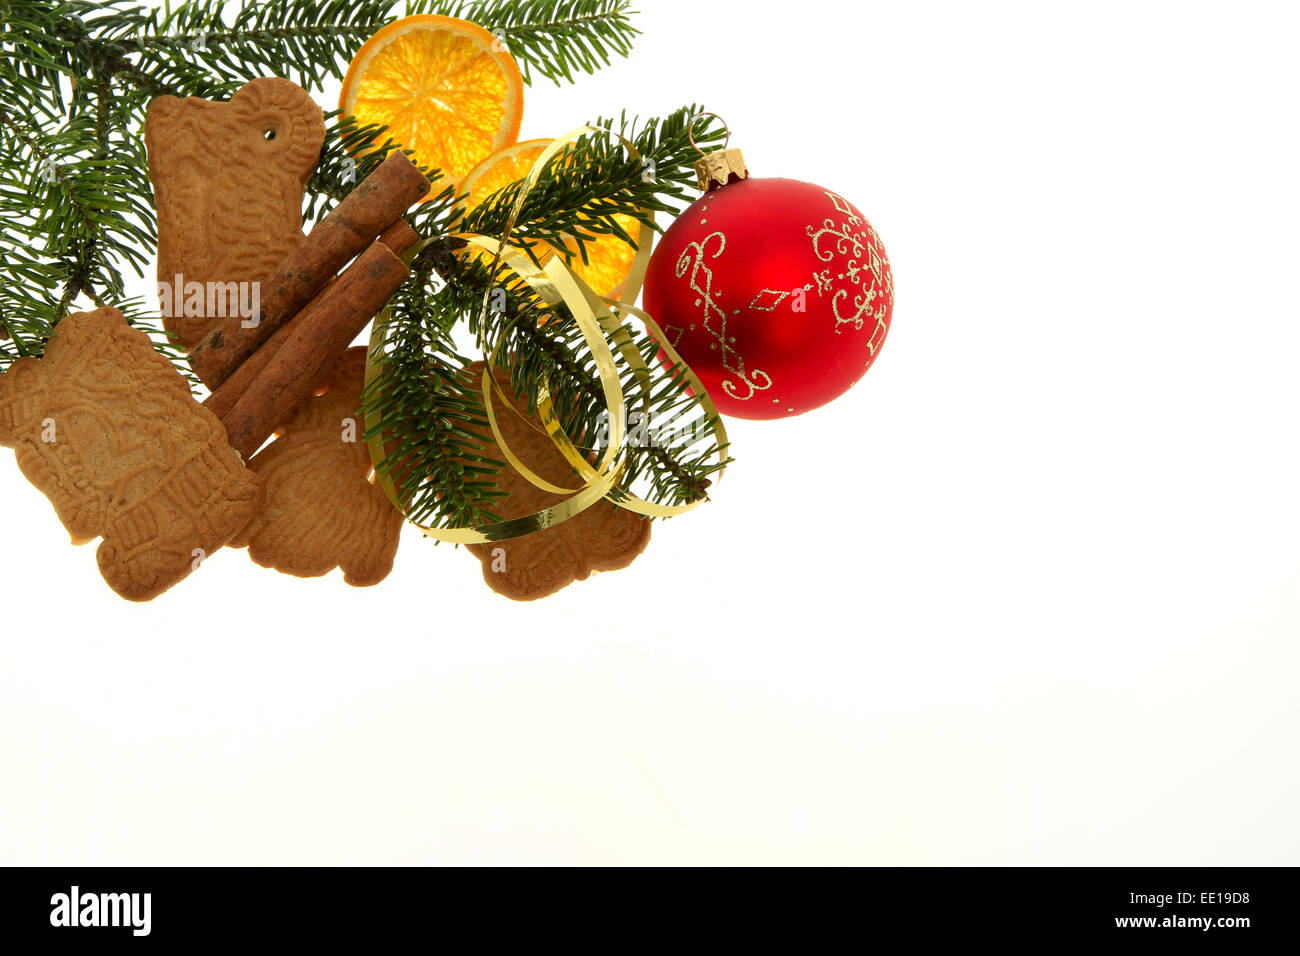 Weihnachtsgebäck, Mandel Spekulatius Stock Photo